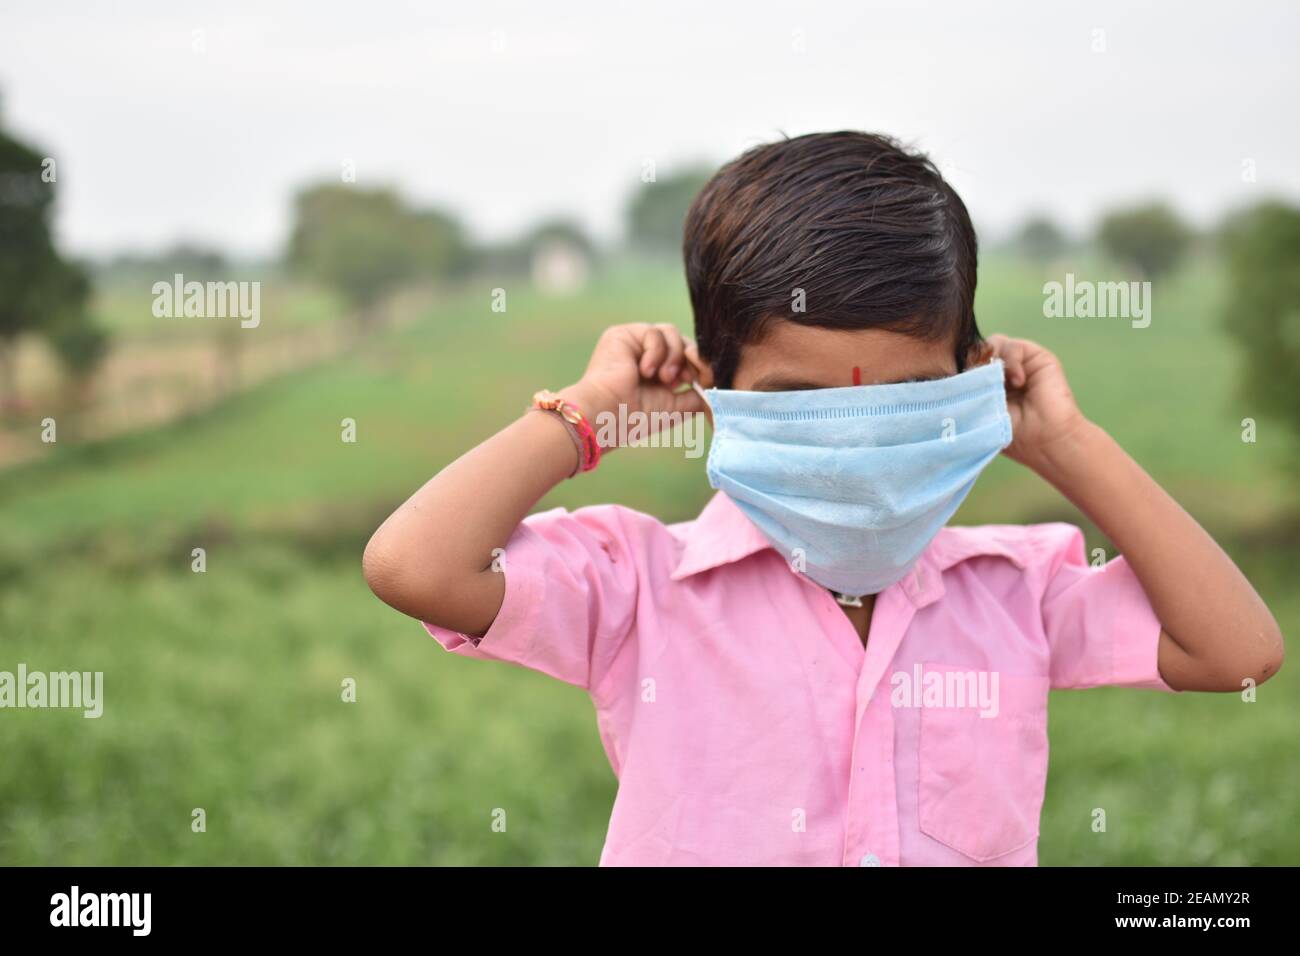 Fuoco selettivo di un ragazzo che indossa una maschera sanitaria troppo grande per il suo volto Foto Stock